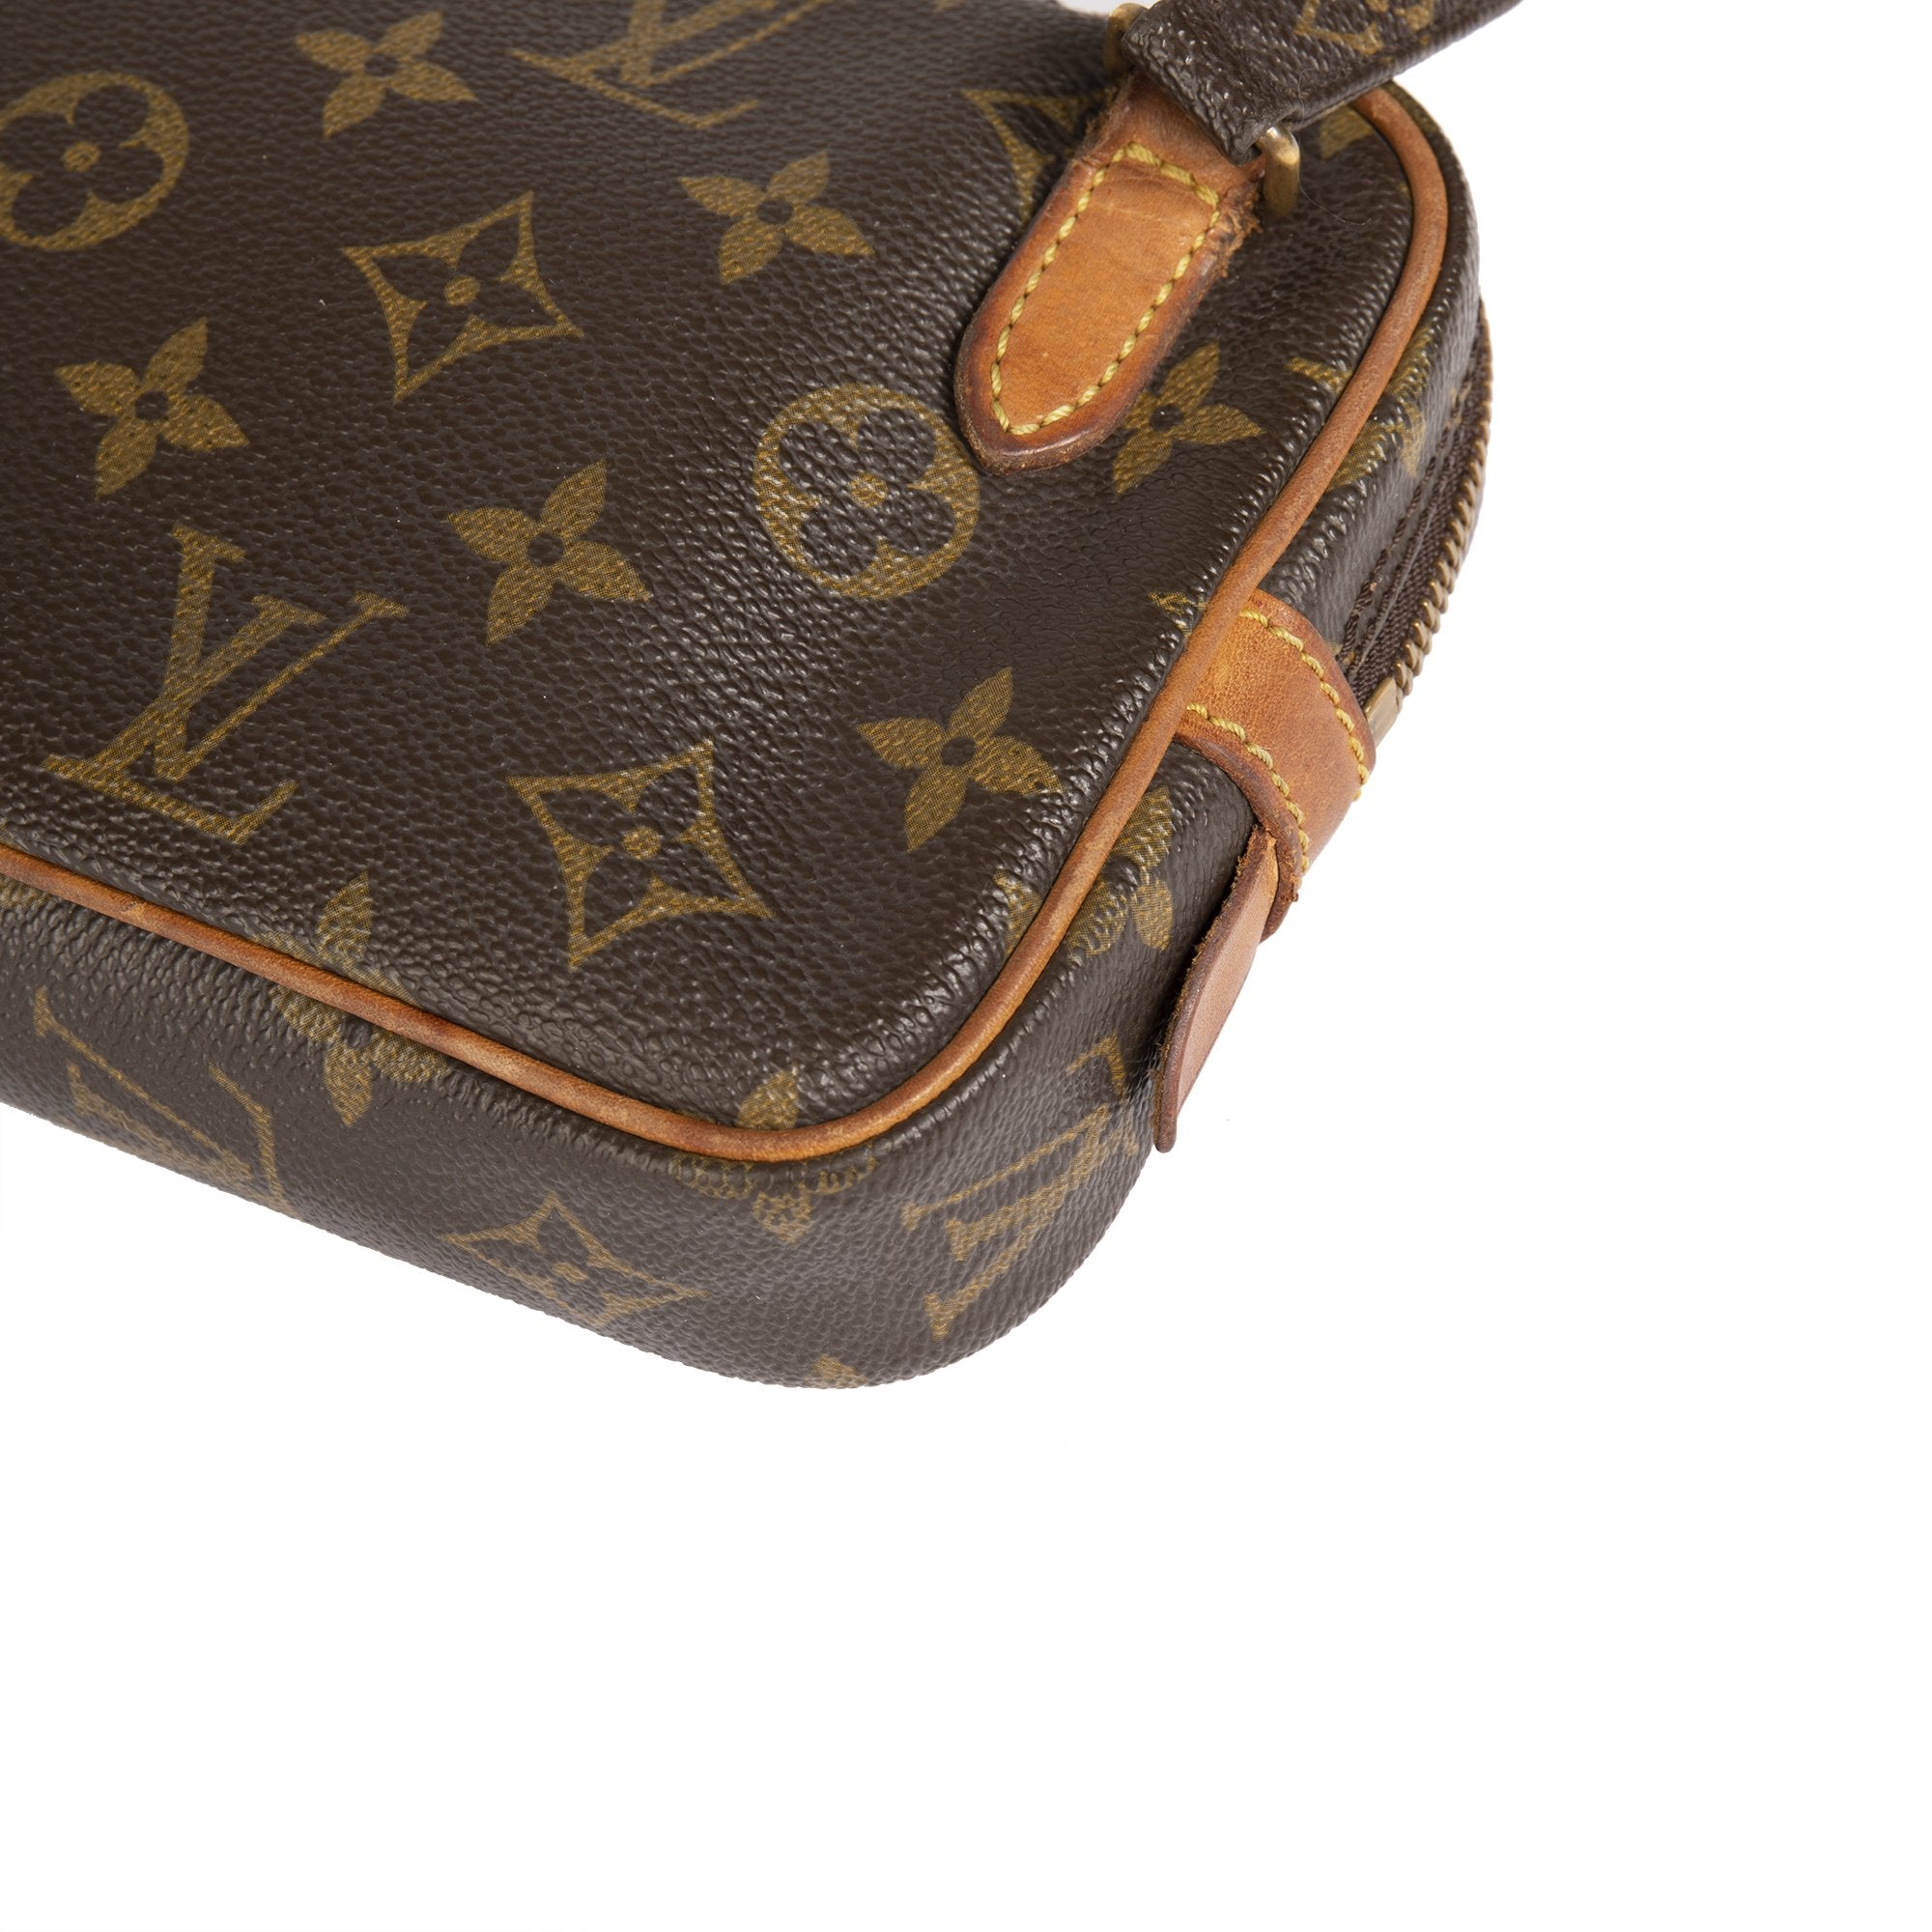 Louis Vuitton Pochette Marly Bandouliere Bag Monogram Canvas